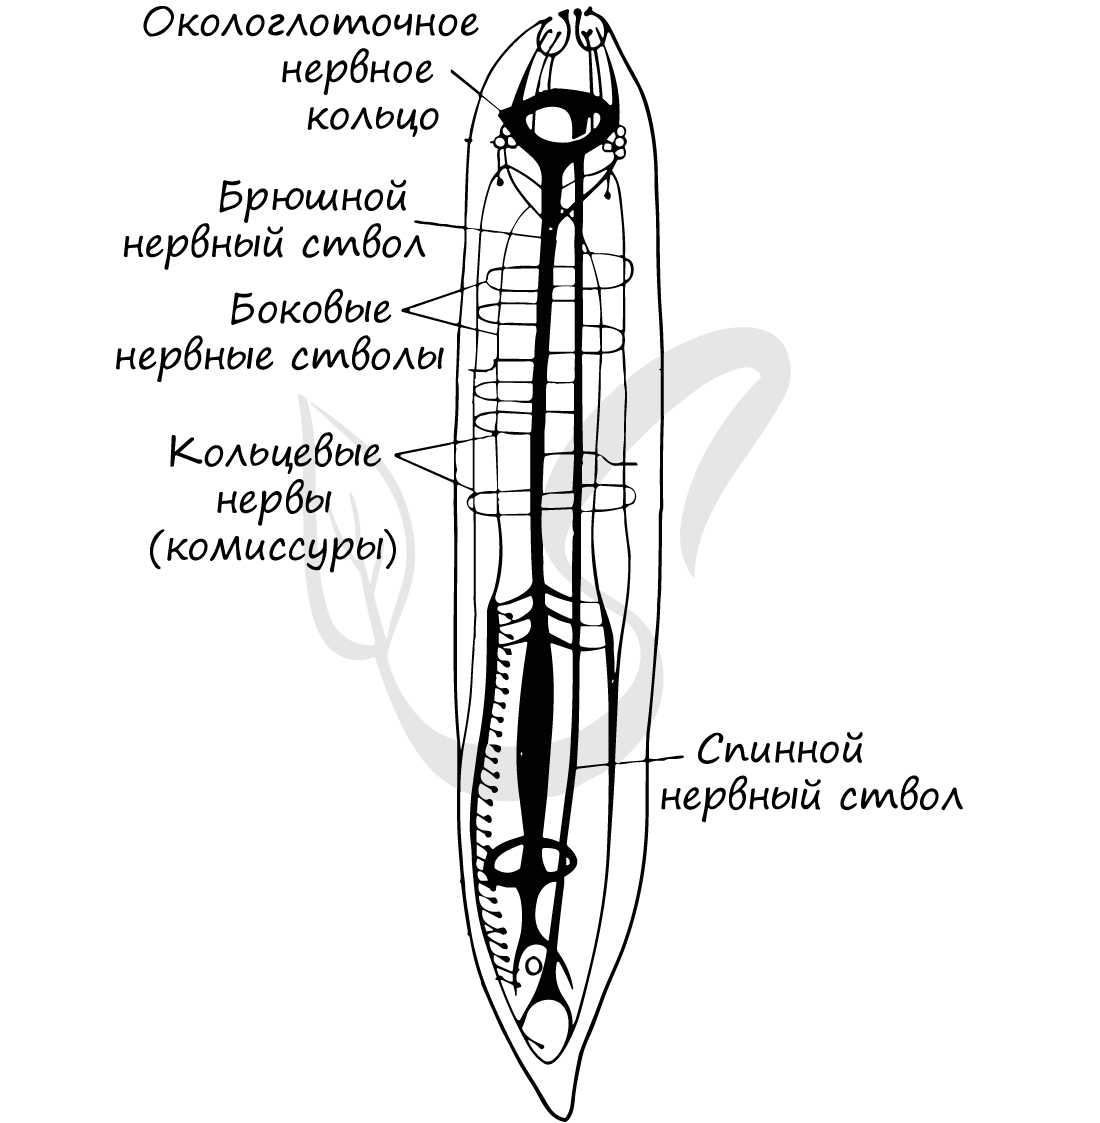 Тип нервной системы круглых червей